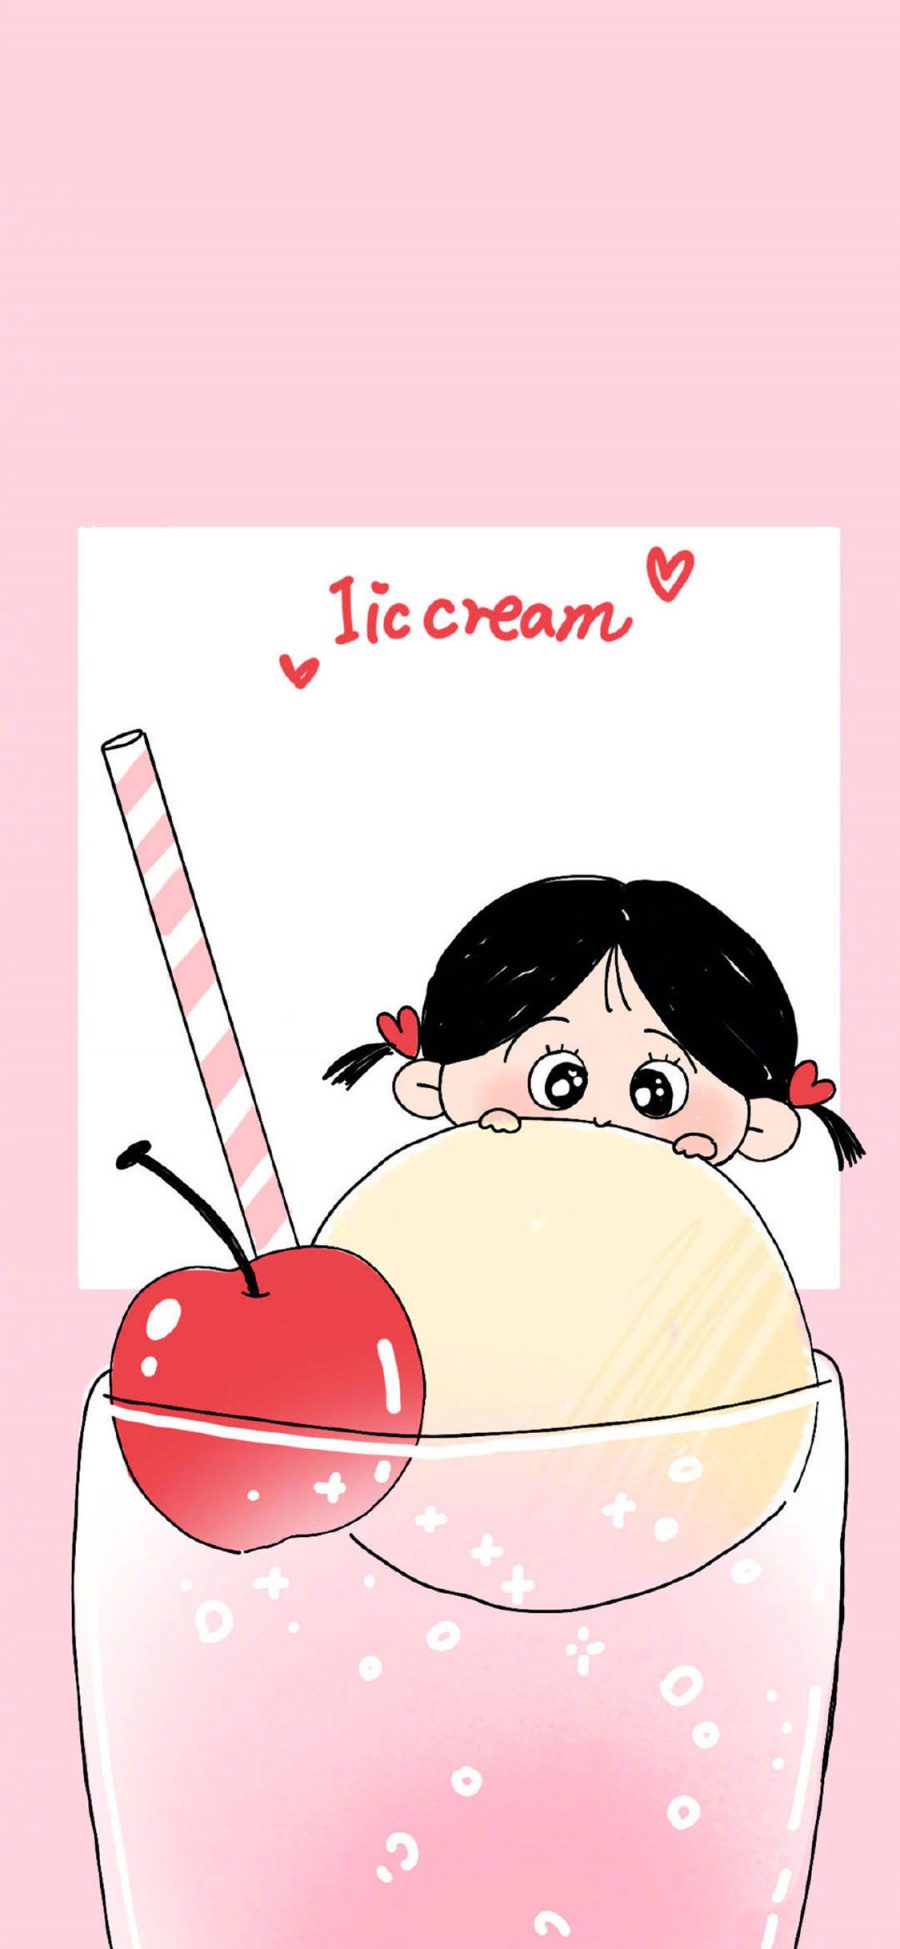 [2436×1125]插图 女孩 冰淇淋 樱桃 苹果手机动漫壁纸图片